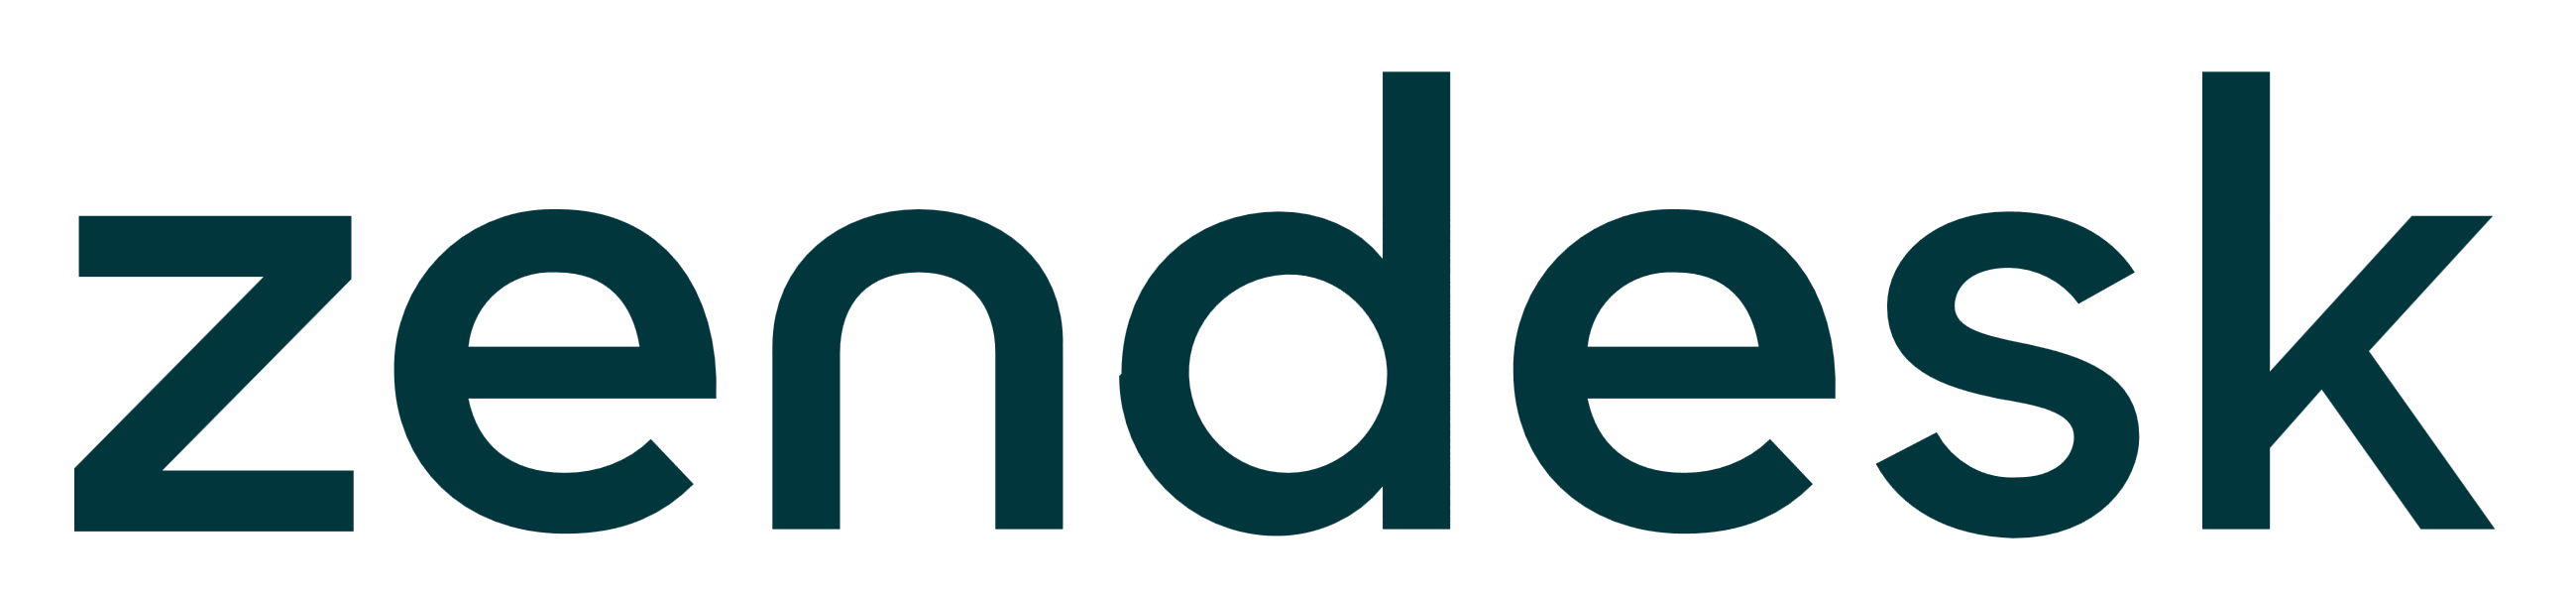 New Zendesk logo